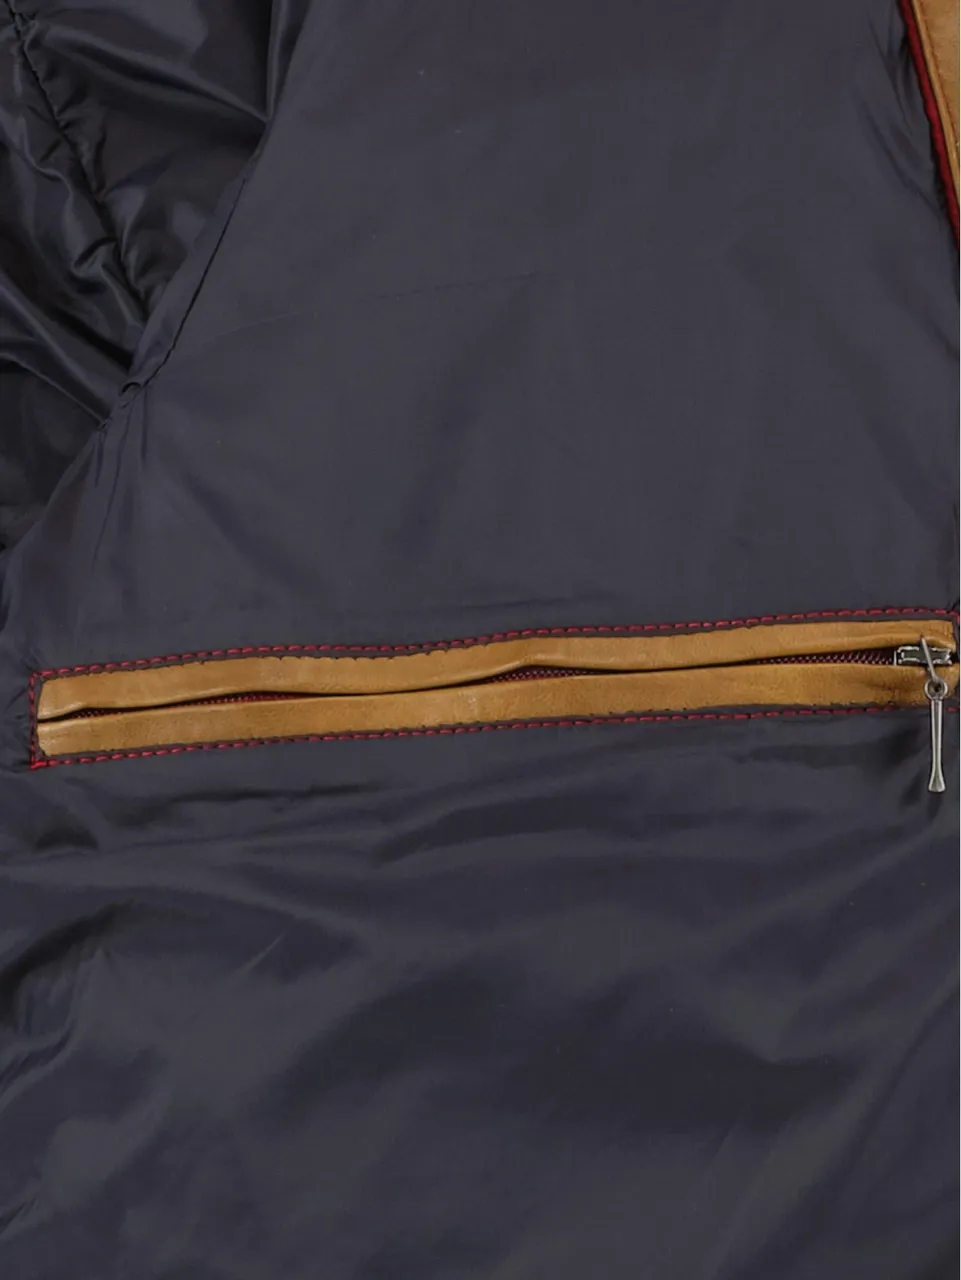 DNR Lederen jack leather jacket 52215.2/220